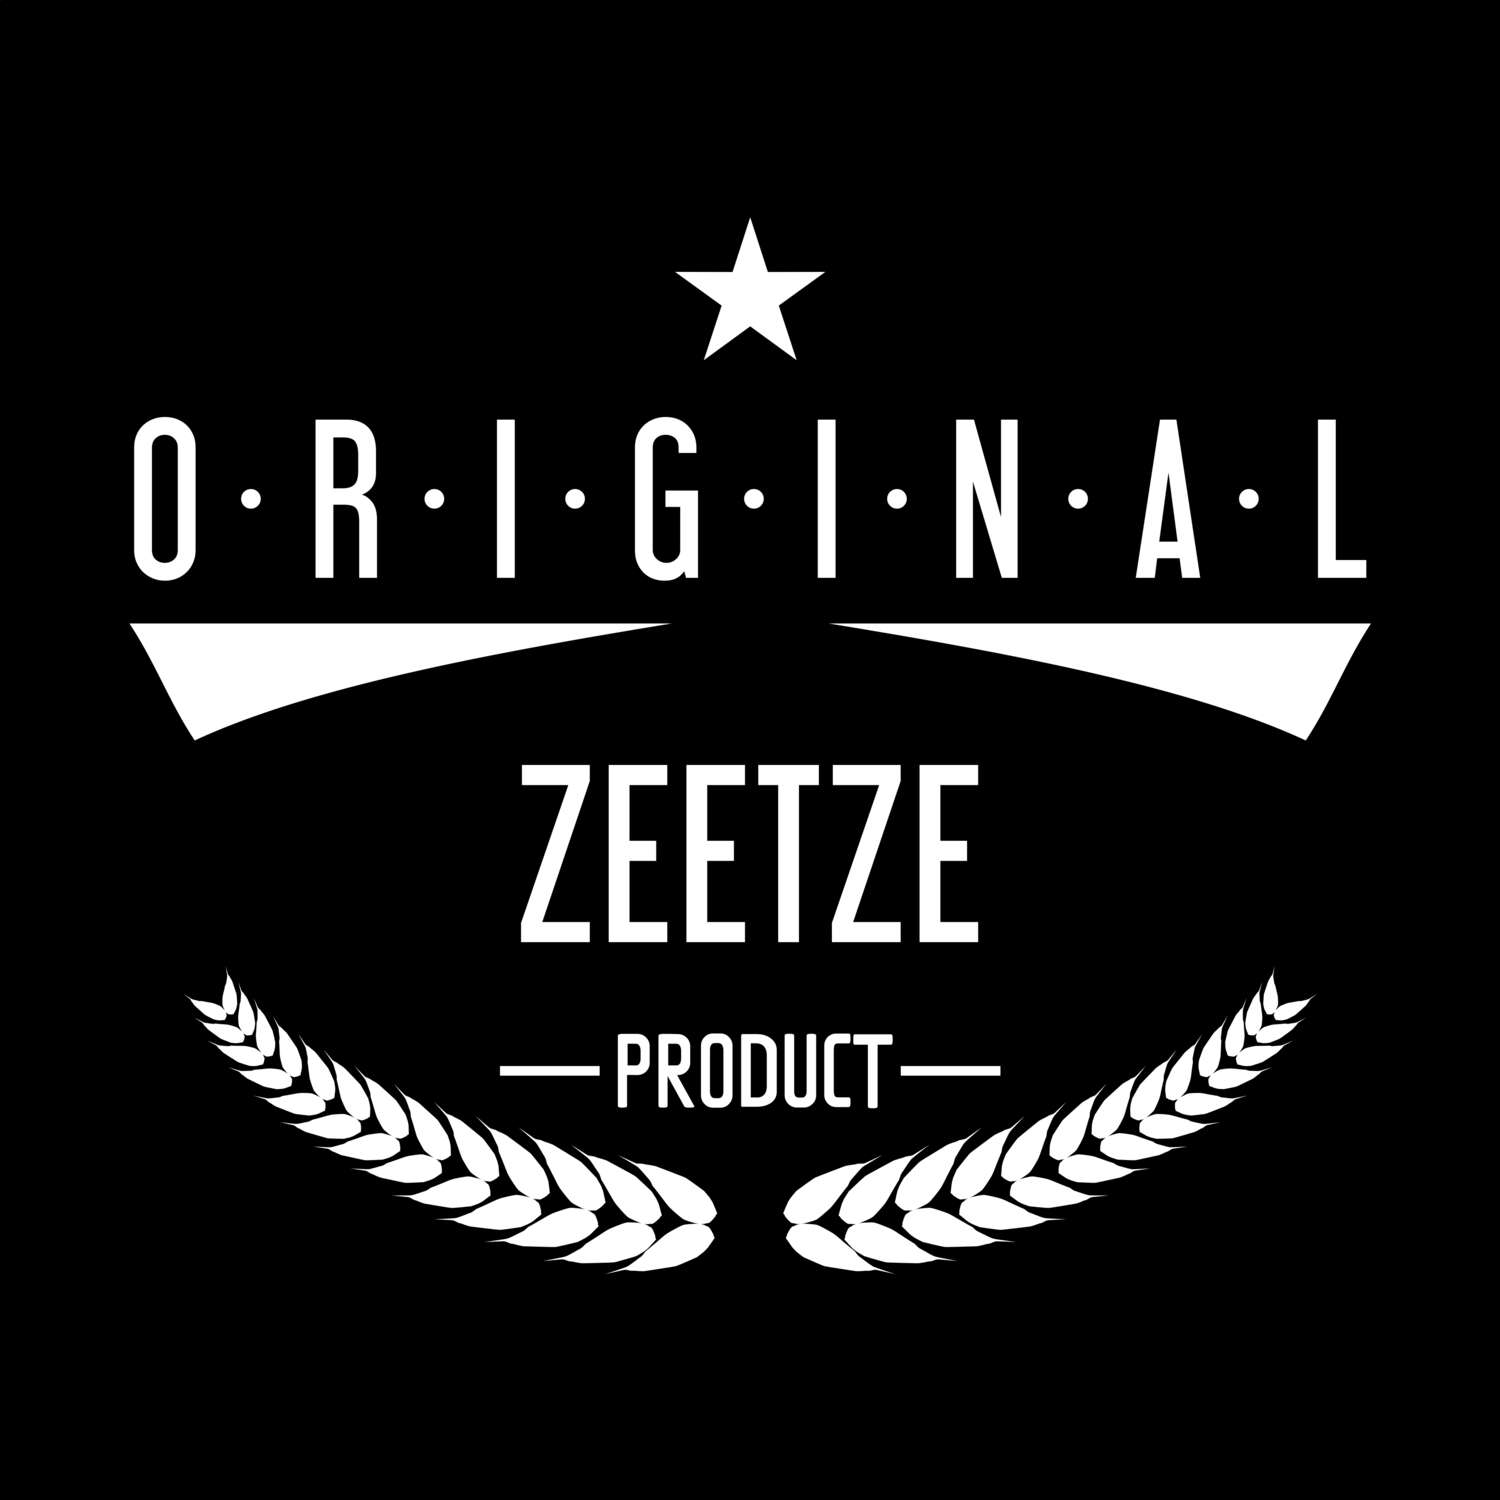 Zeetze T-Shirt »Original Product«